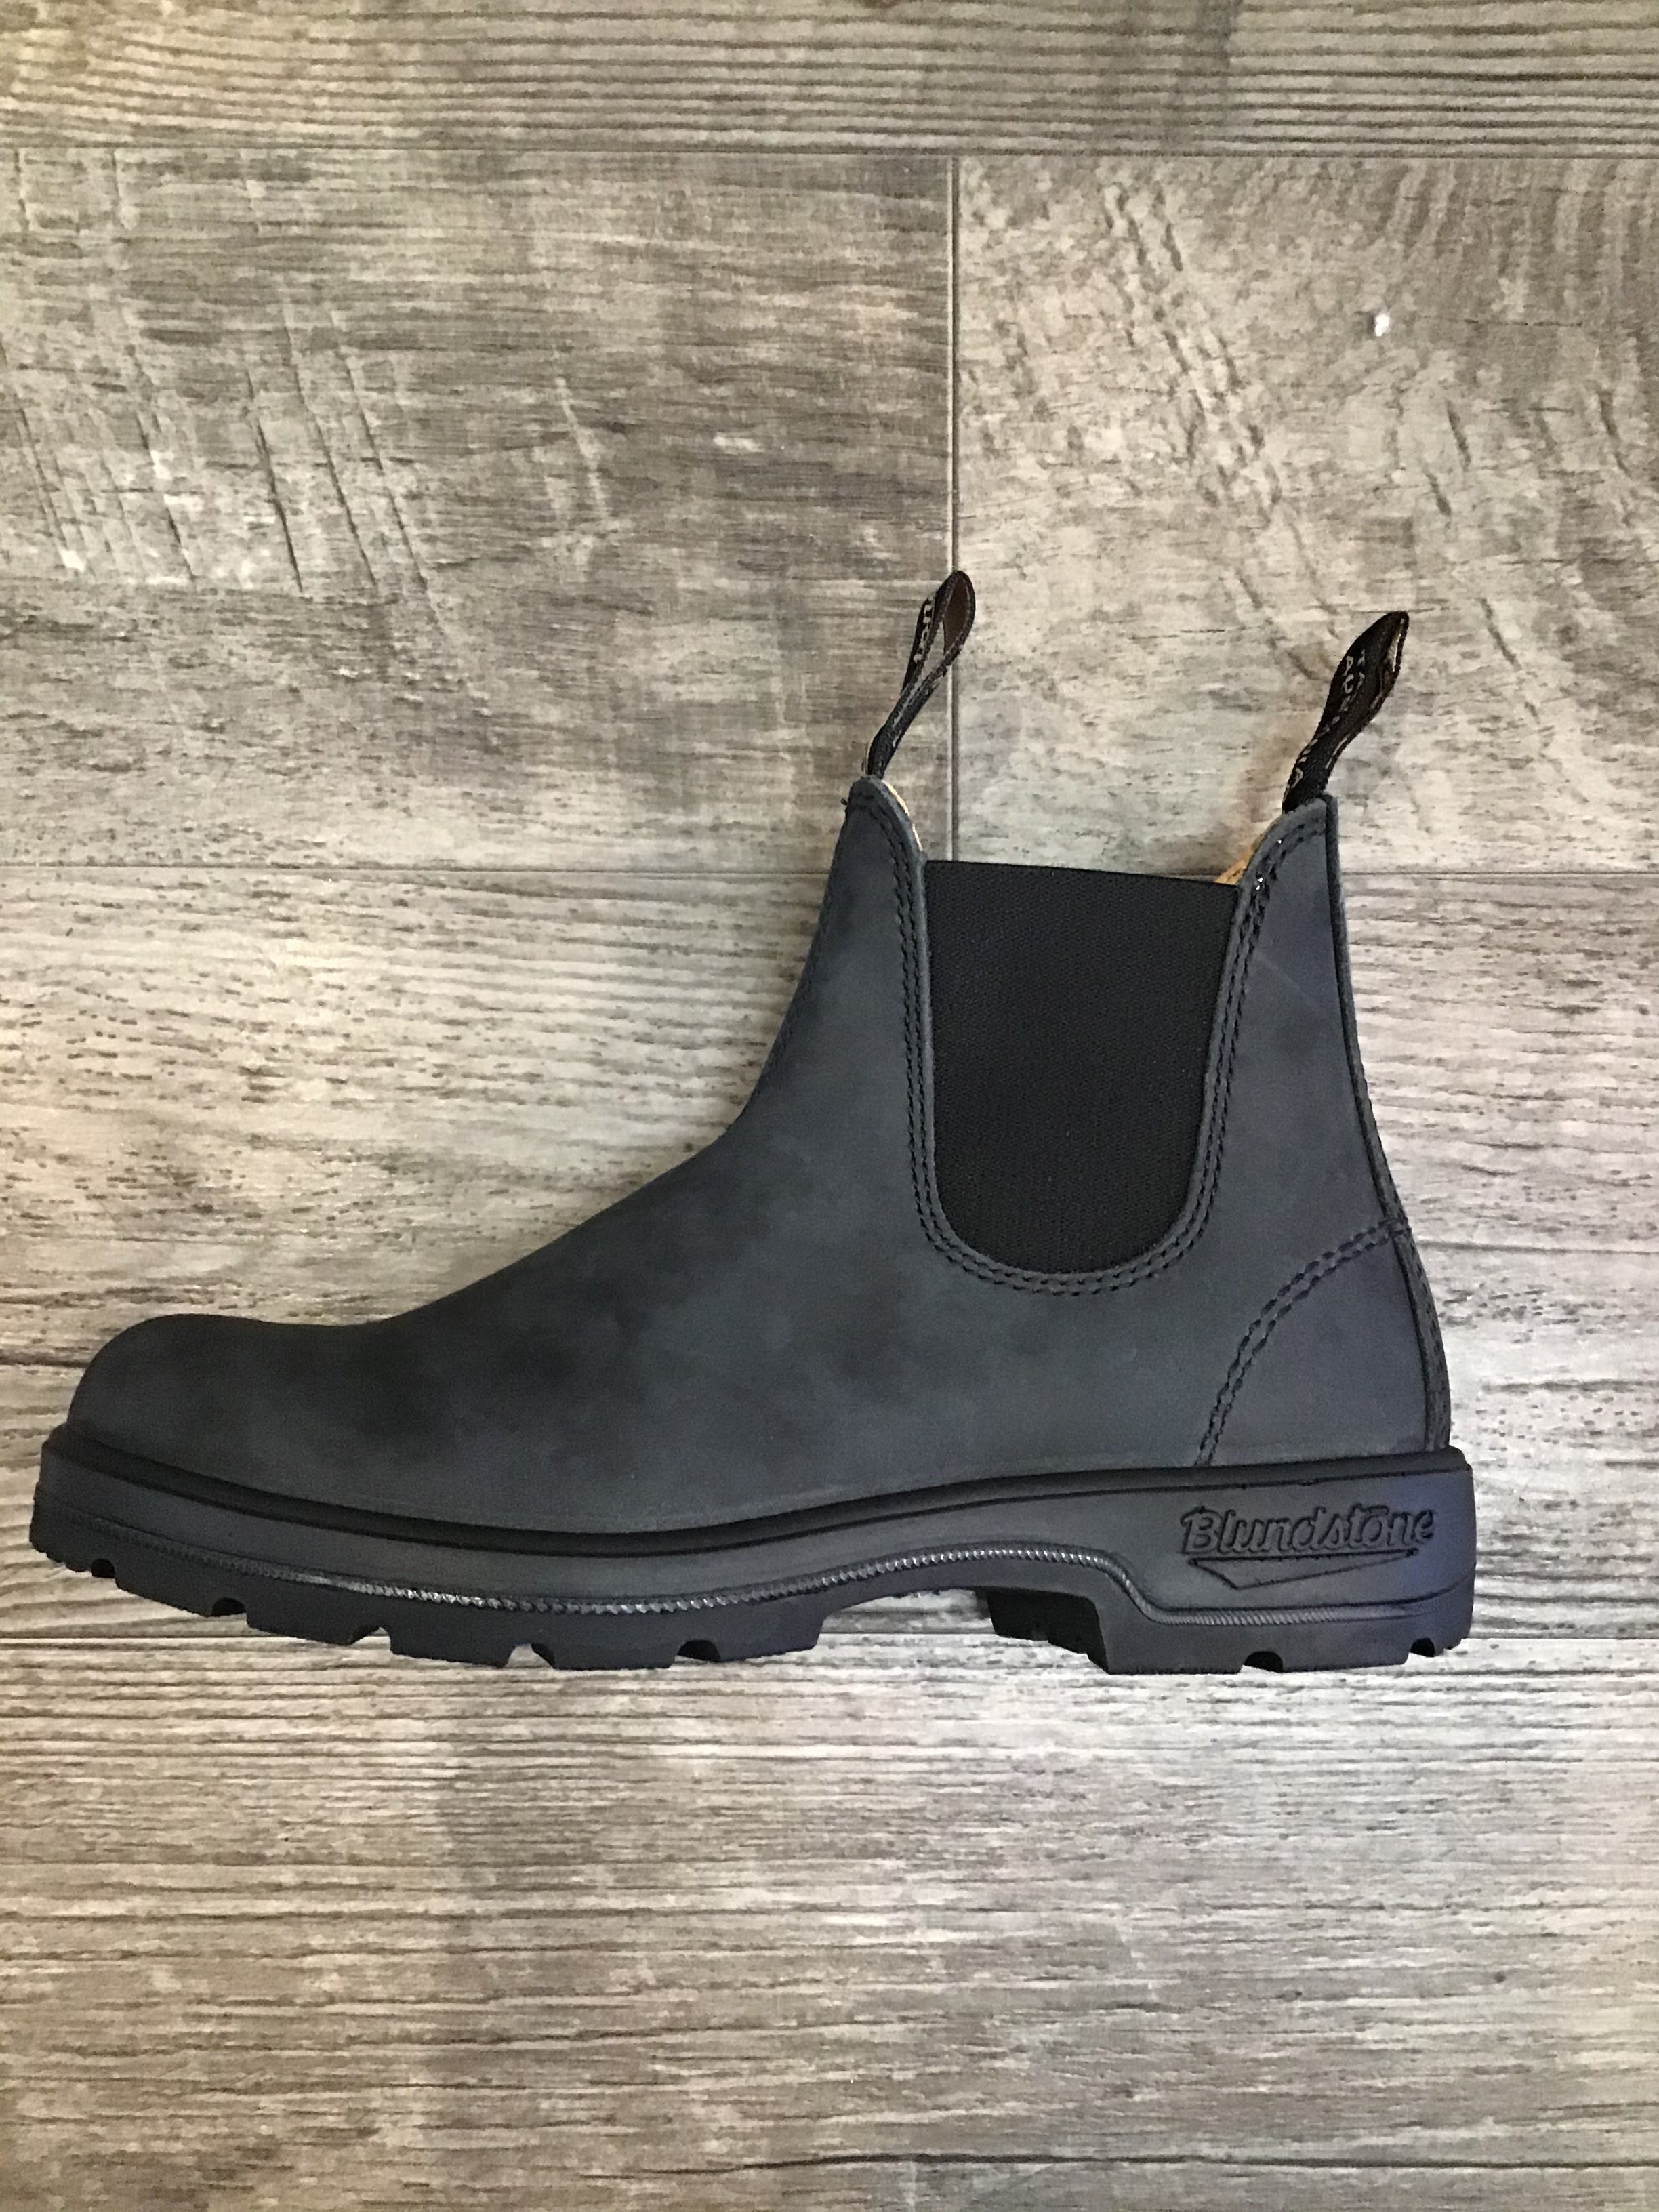 rustic black boots